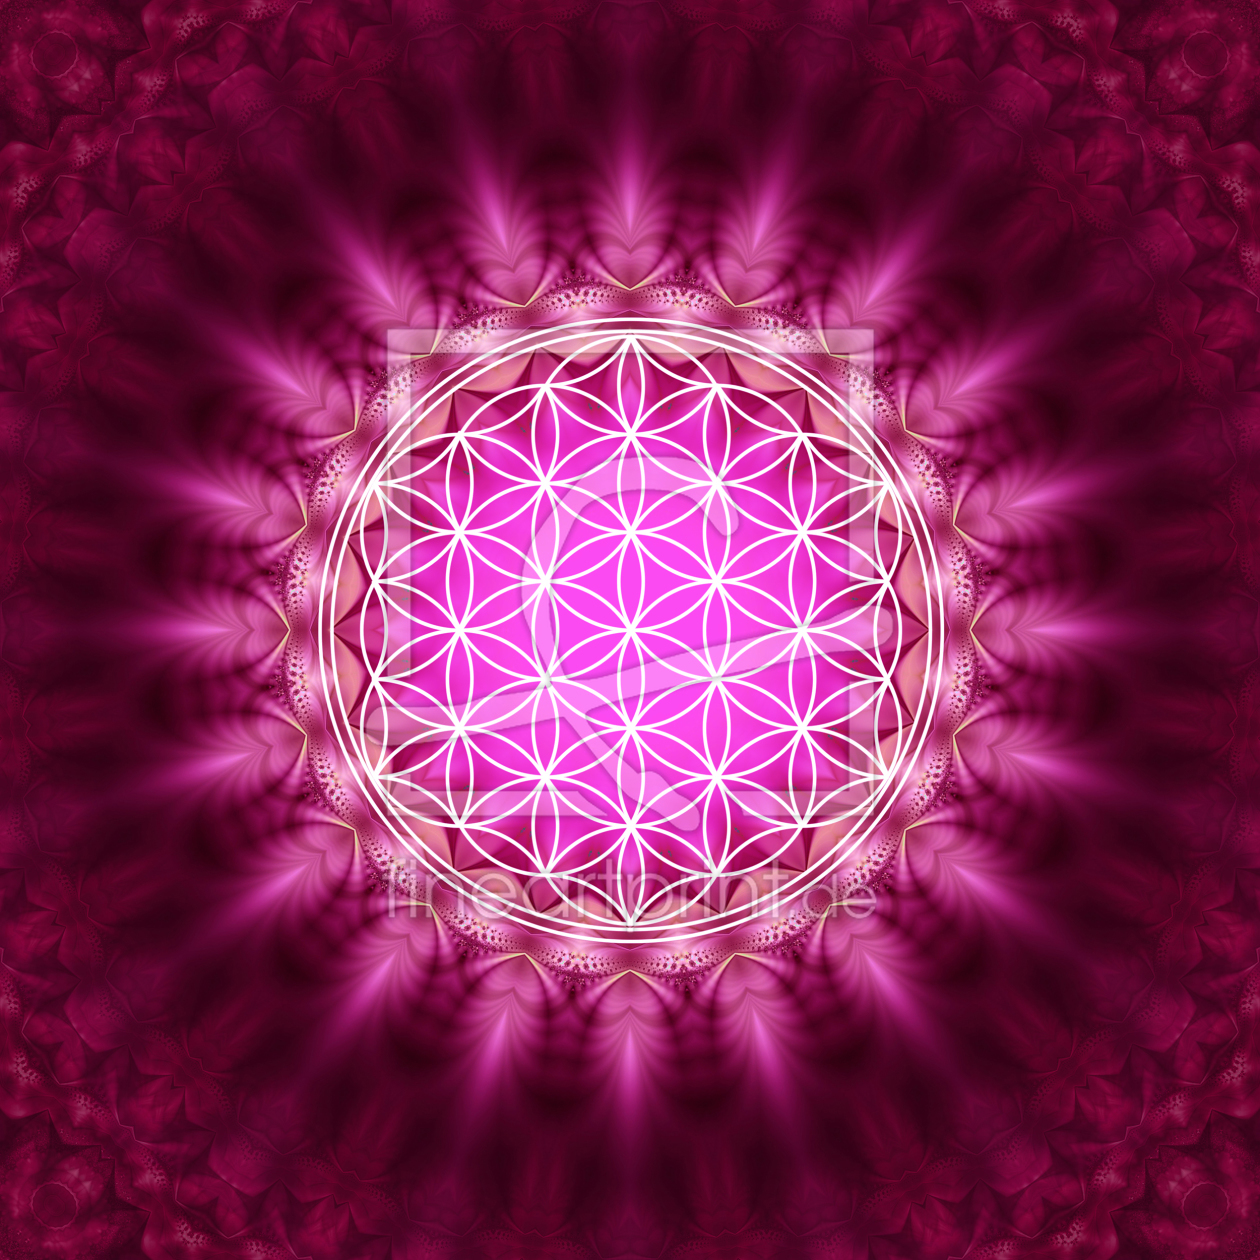 Bild-Nr.: 10849321 Blume des Lebens - Heilige Geometrie - Symbol der Harmonie erstellt von yuma